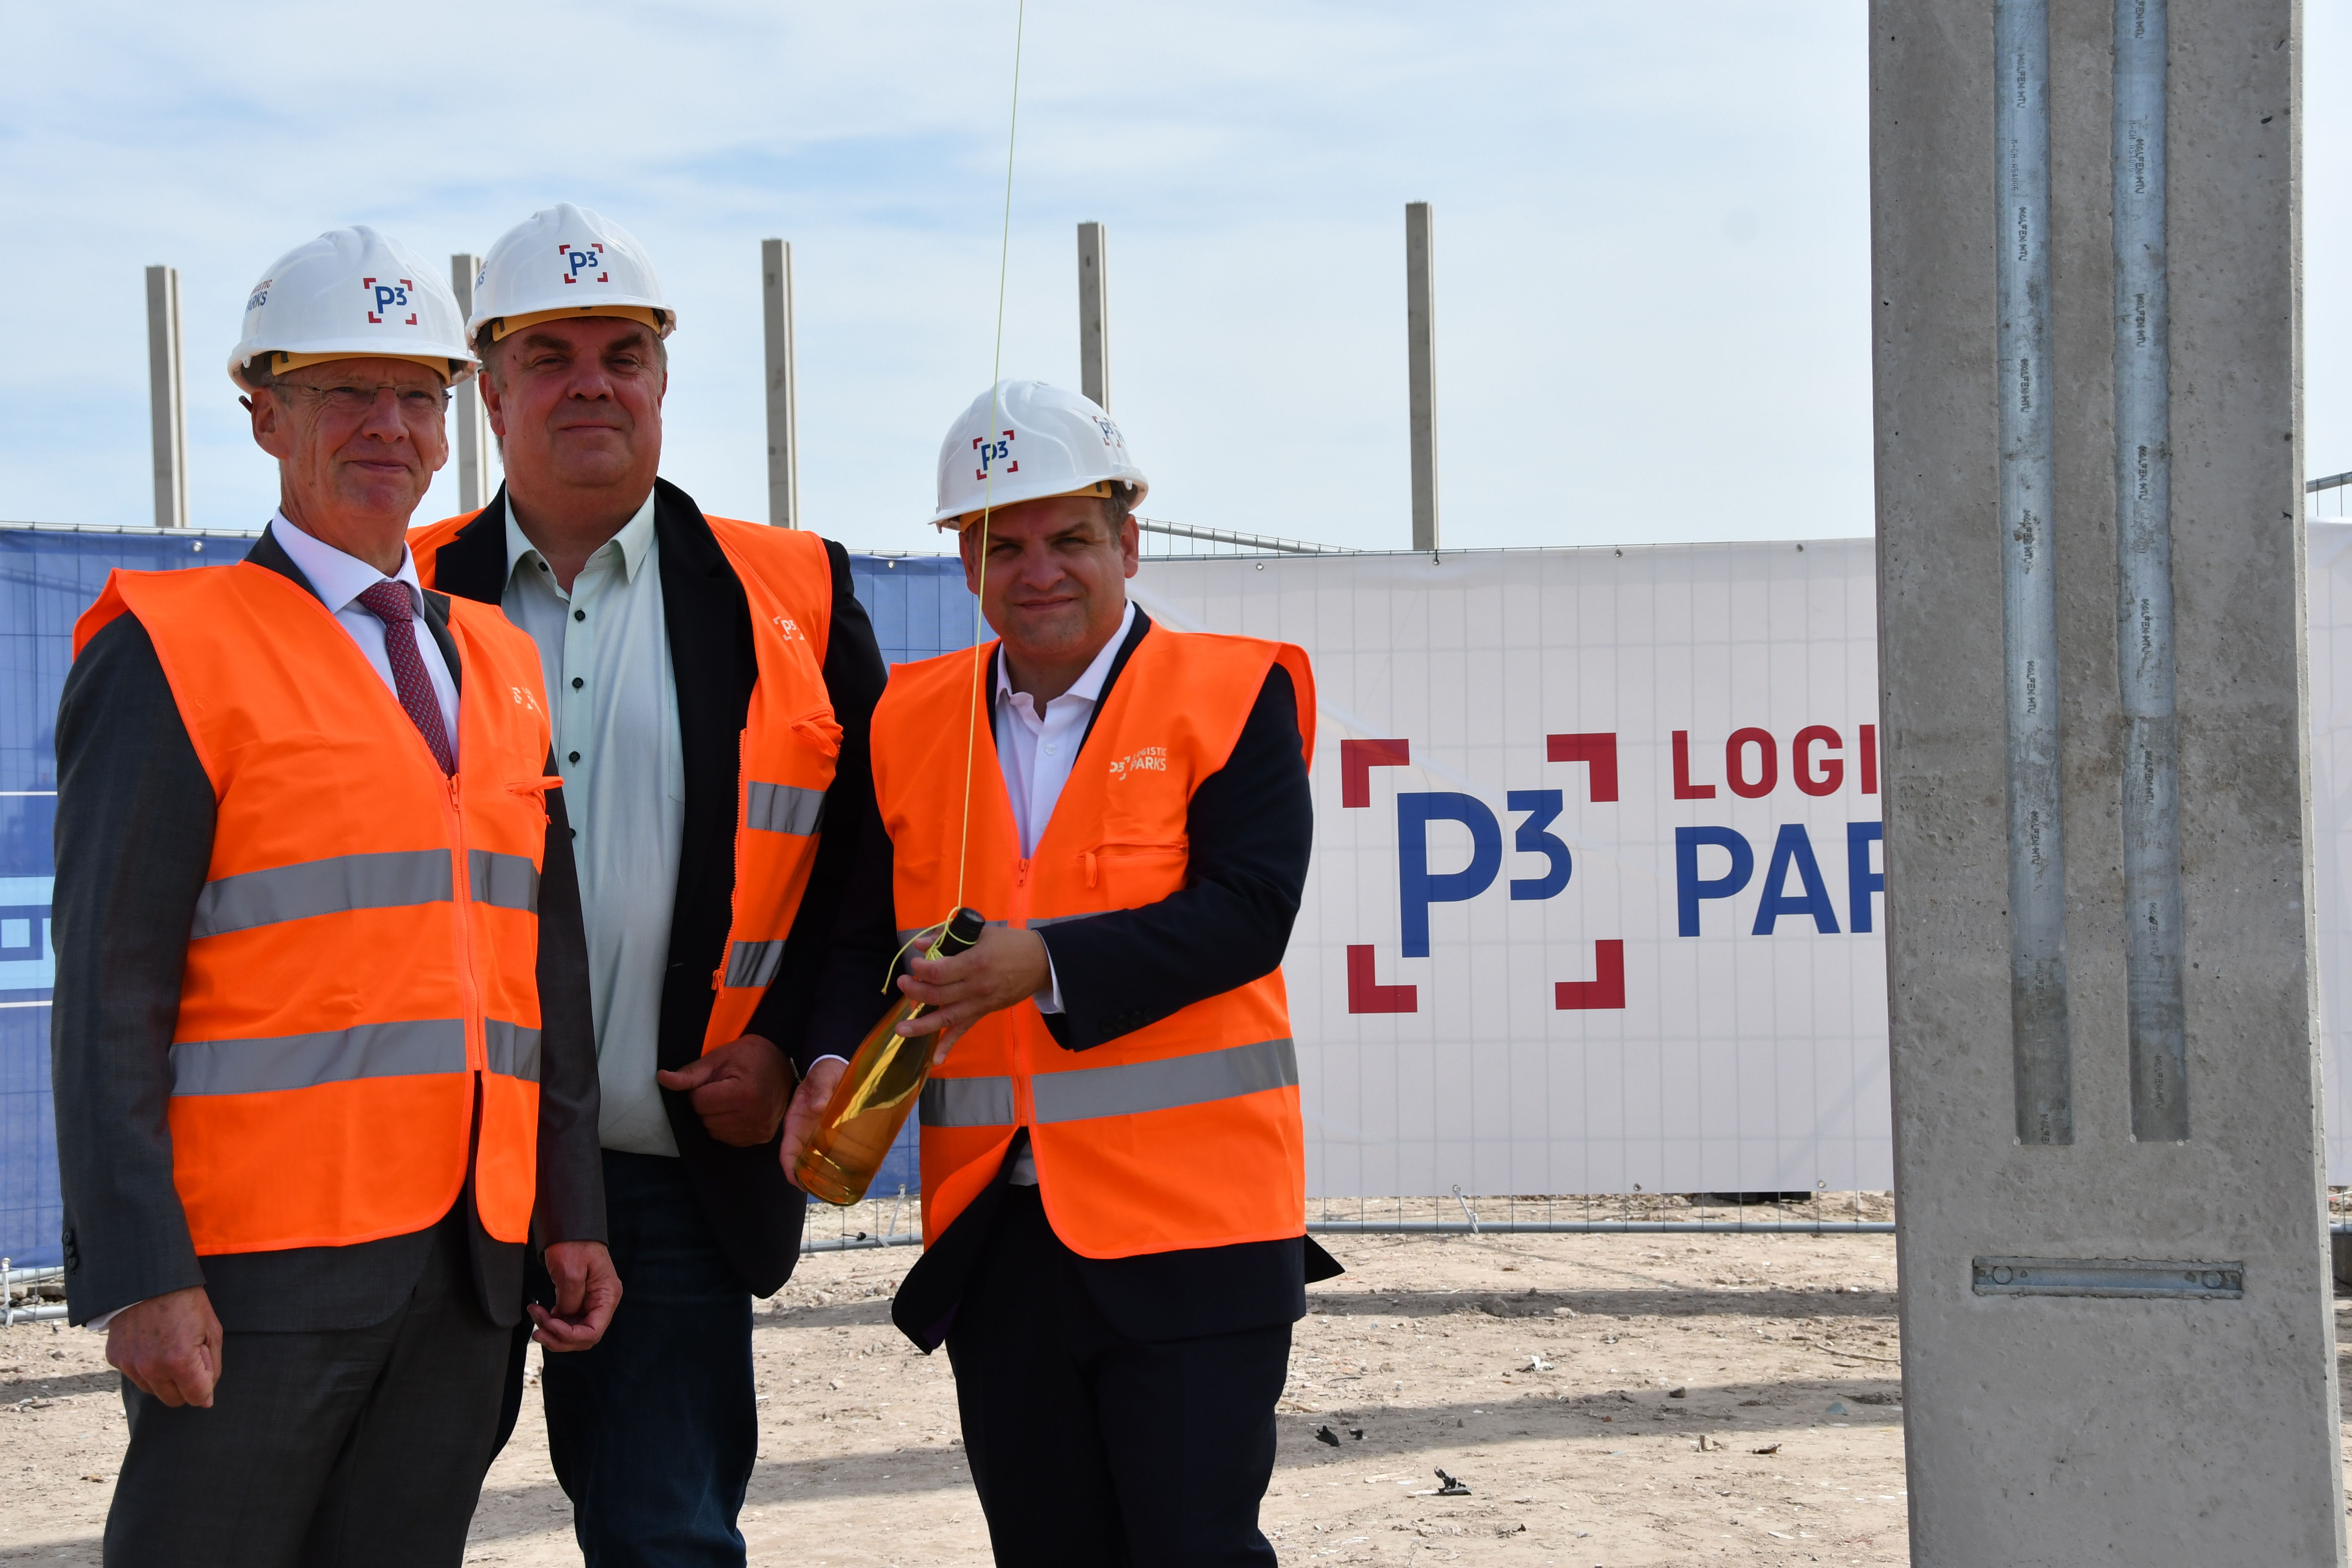 P3 beginnt mit der Errichtung der ersten Stütze die Bauarbeiten am Tiefwasserhafen ​
(von links: Andreas Bullwinkel, Carsten Feist und Sönke Kewitz)